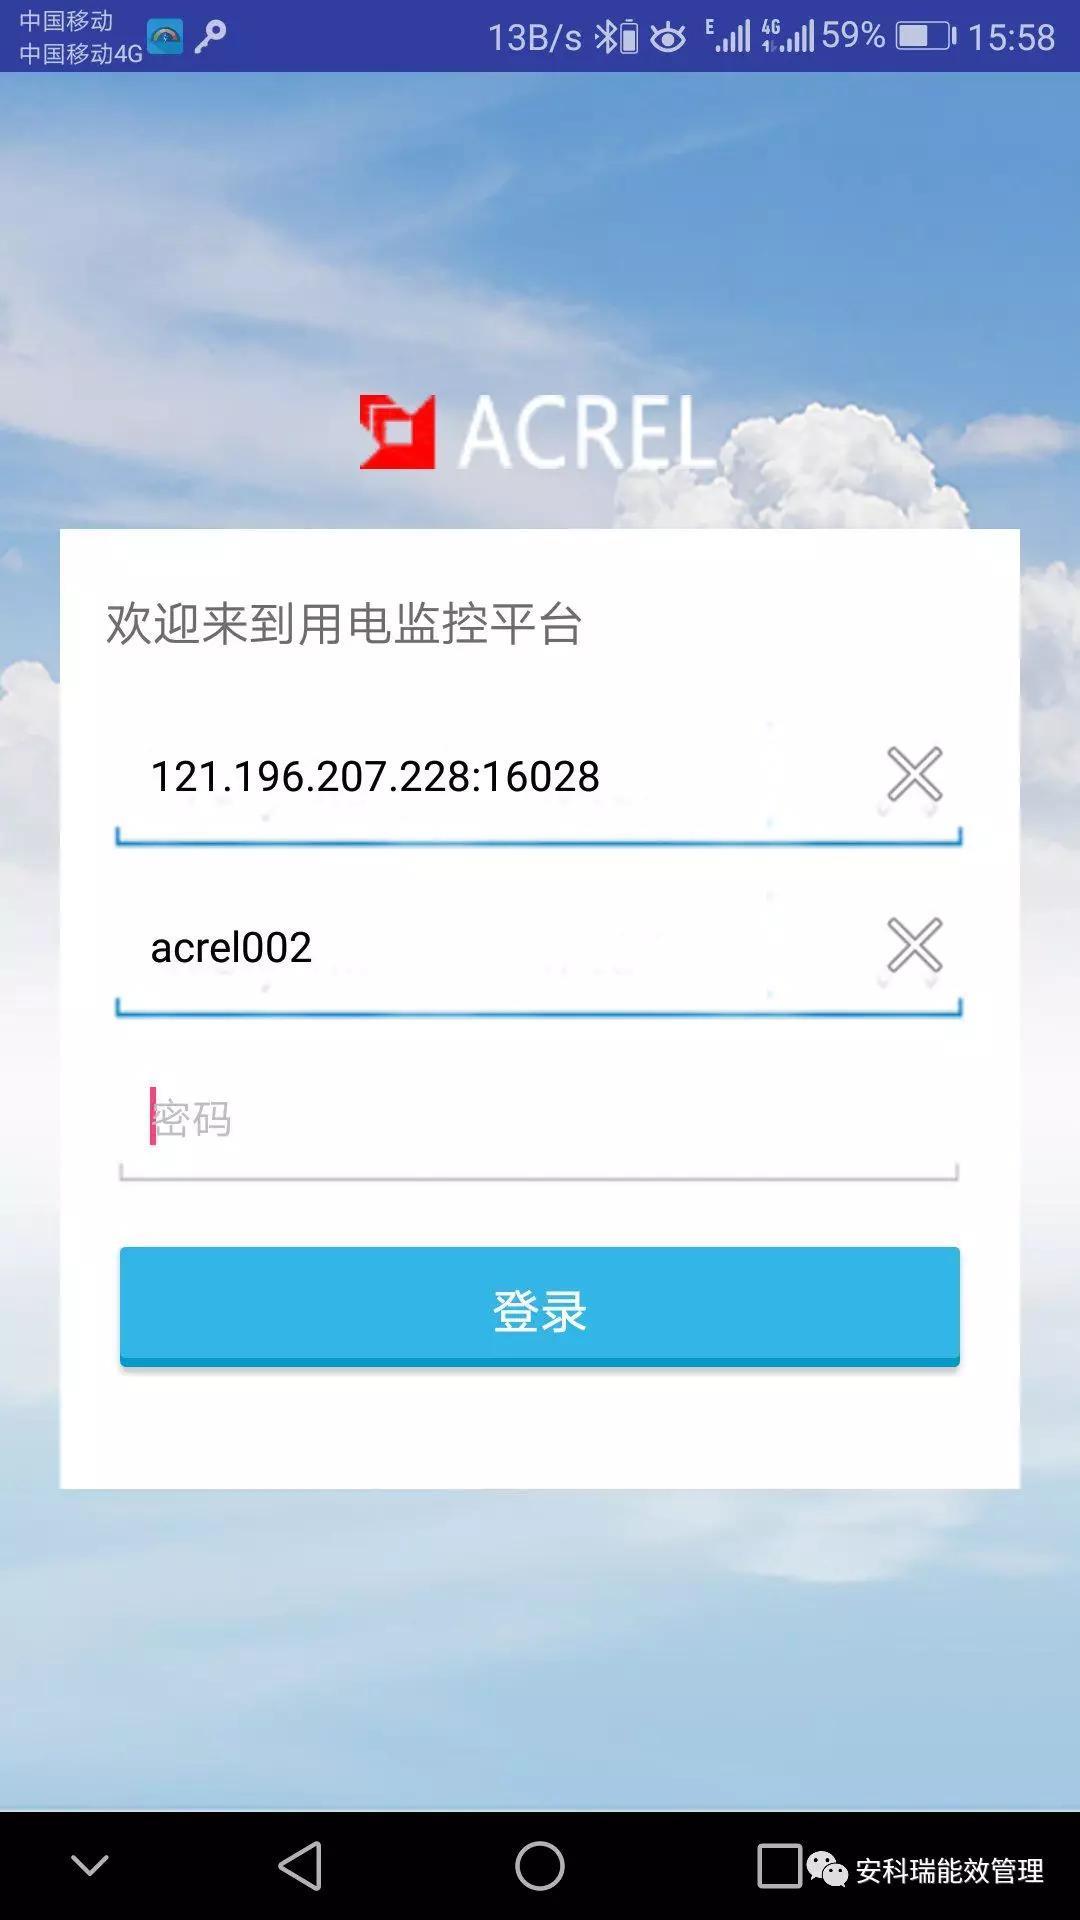 深圳全新安全用电云平台供应商